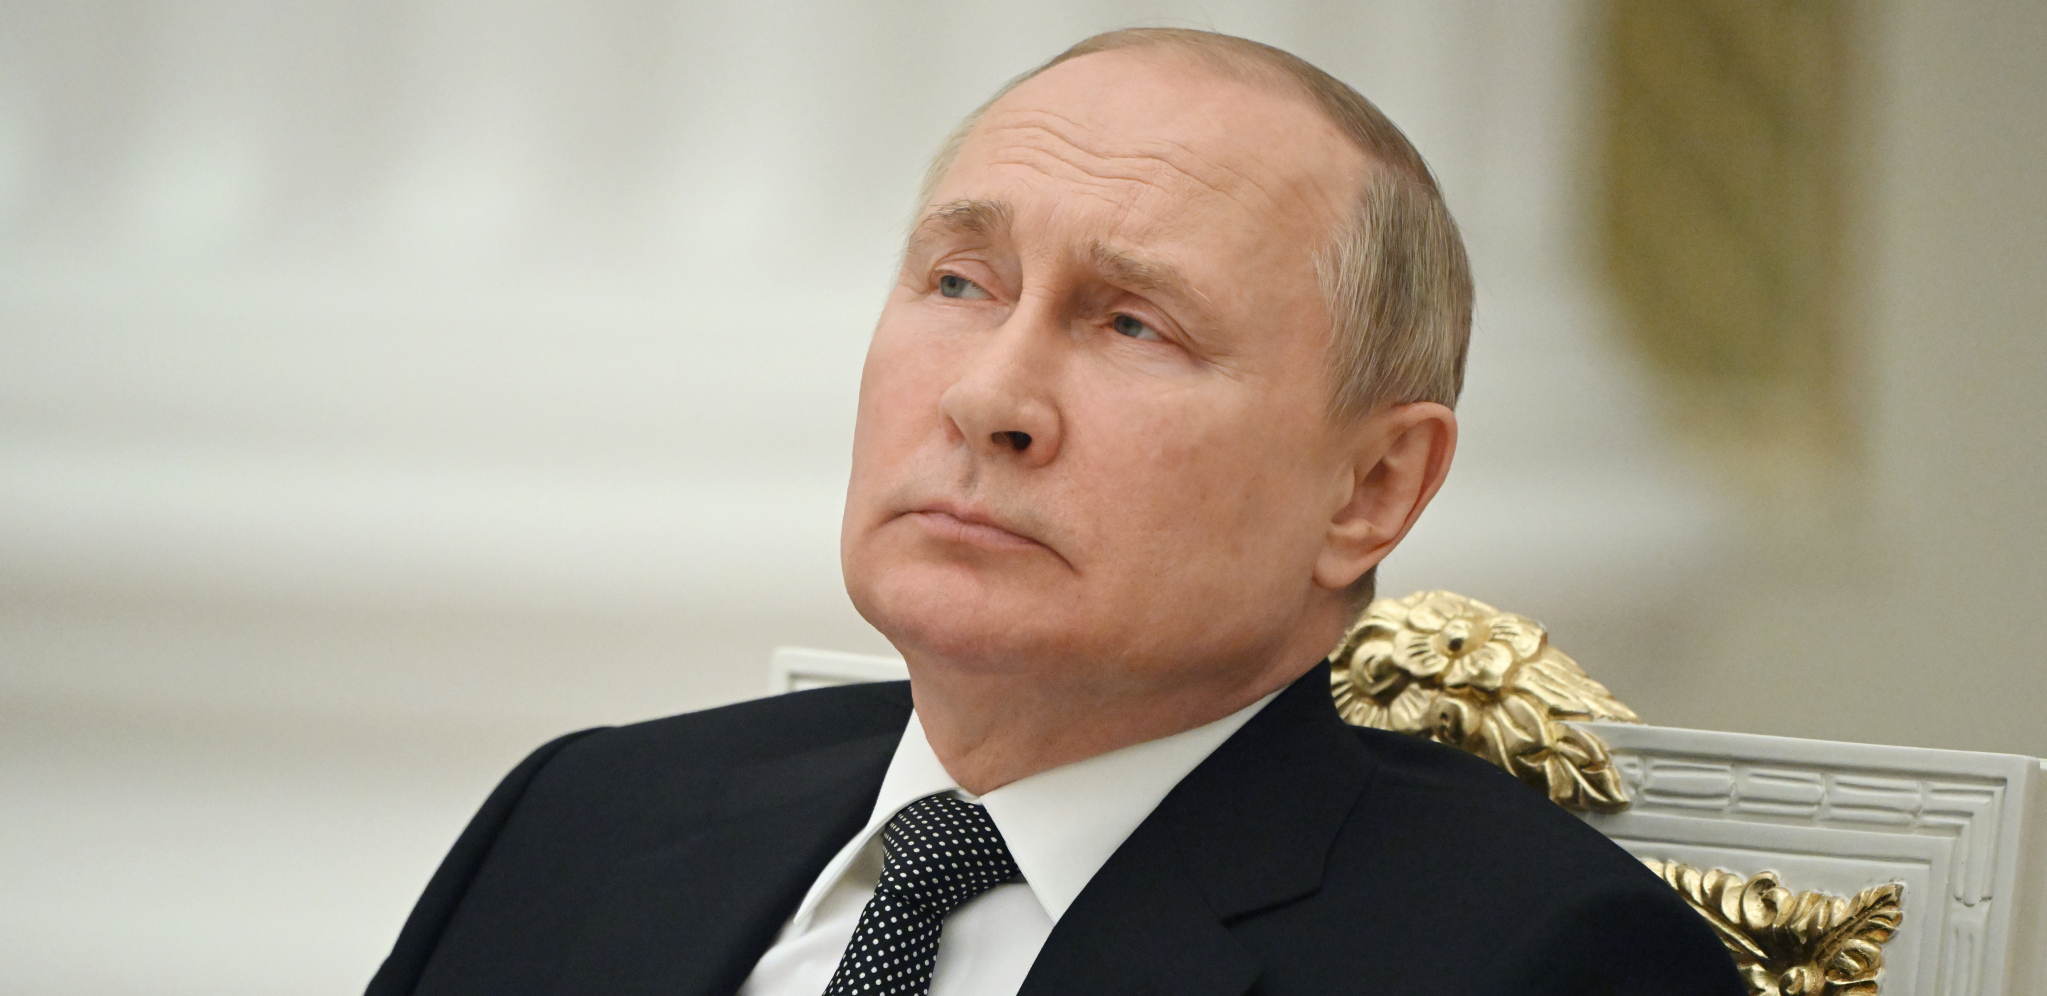 "HOĆETE RAT?" Putinova ledeno hladna poruka: Nećete dočekati raspad!